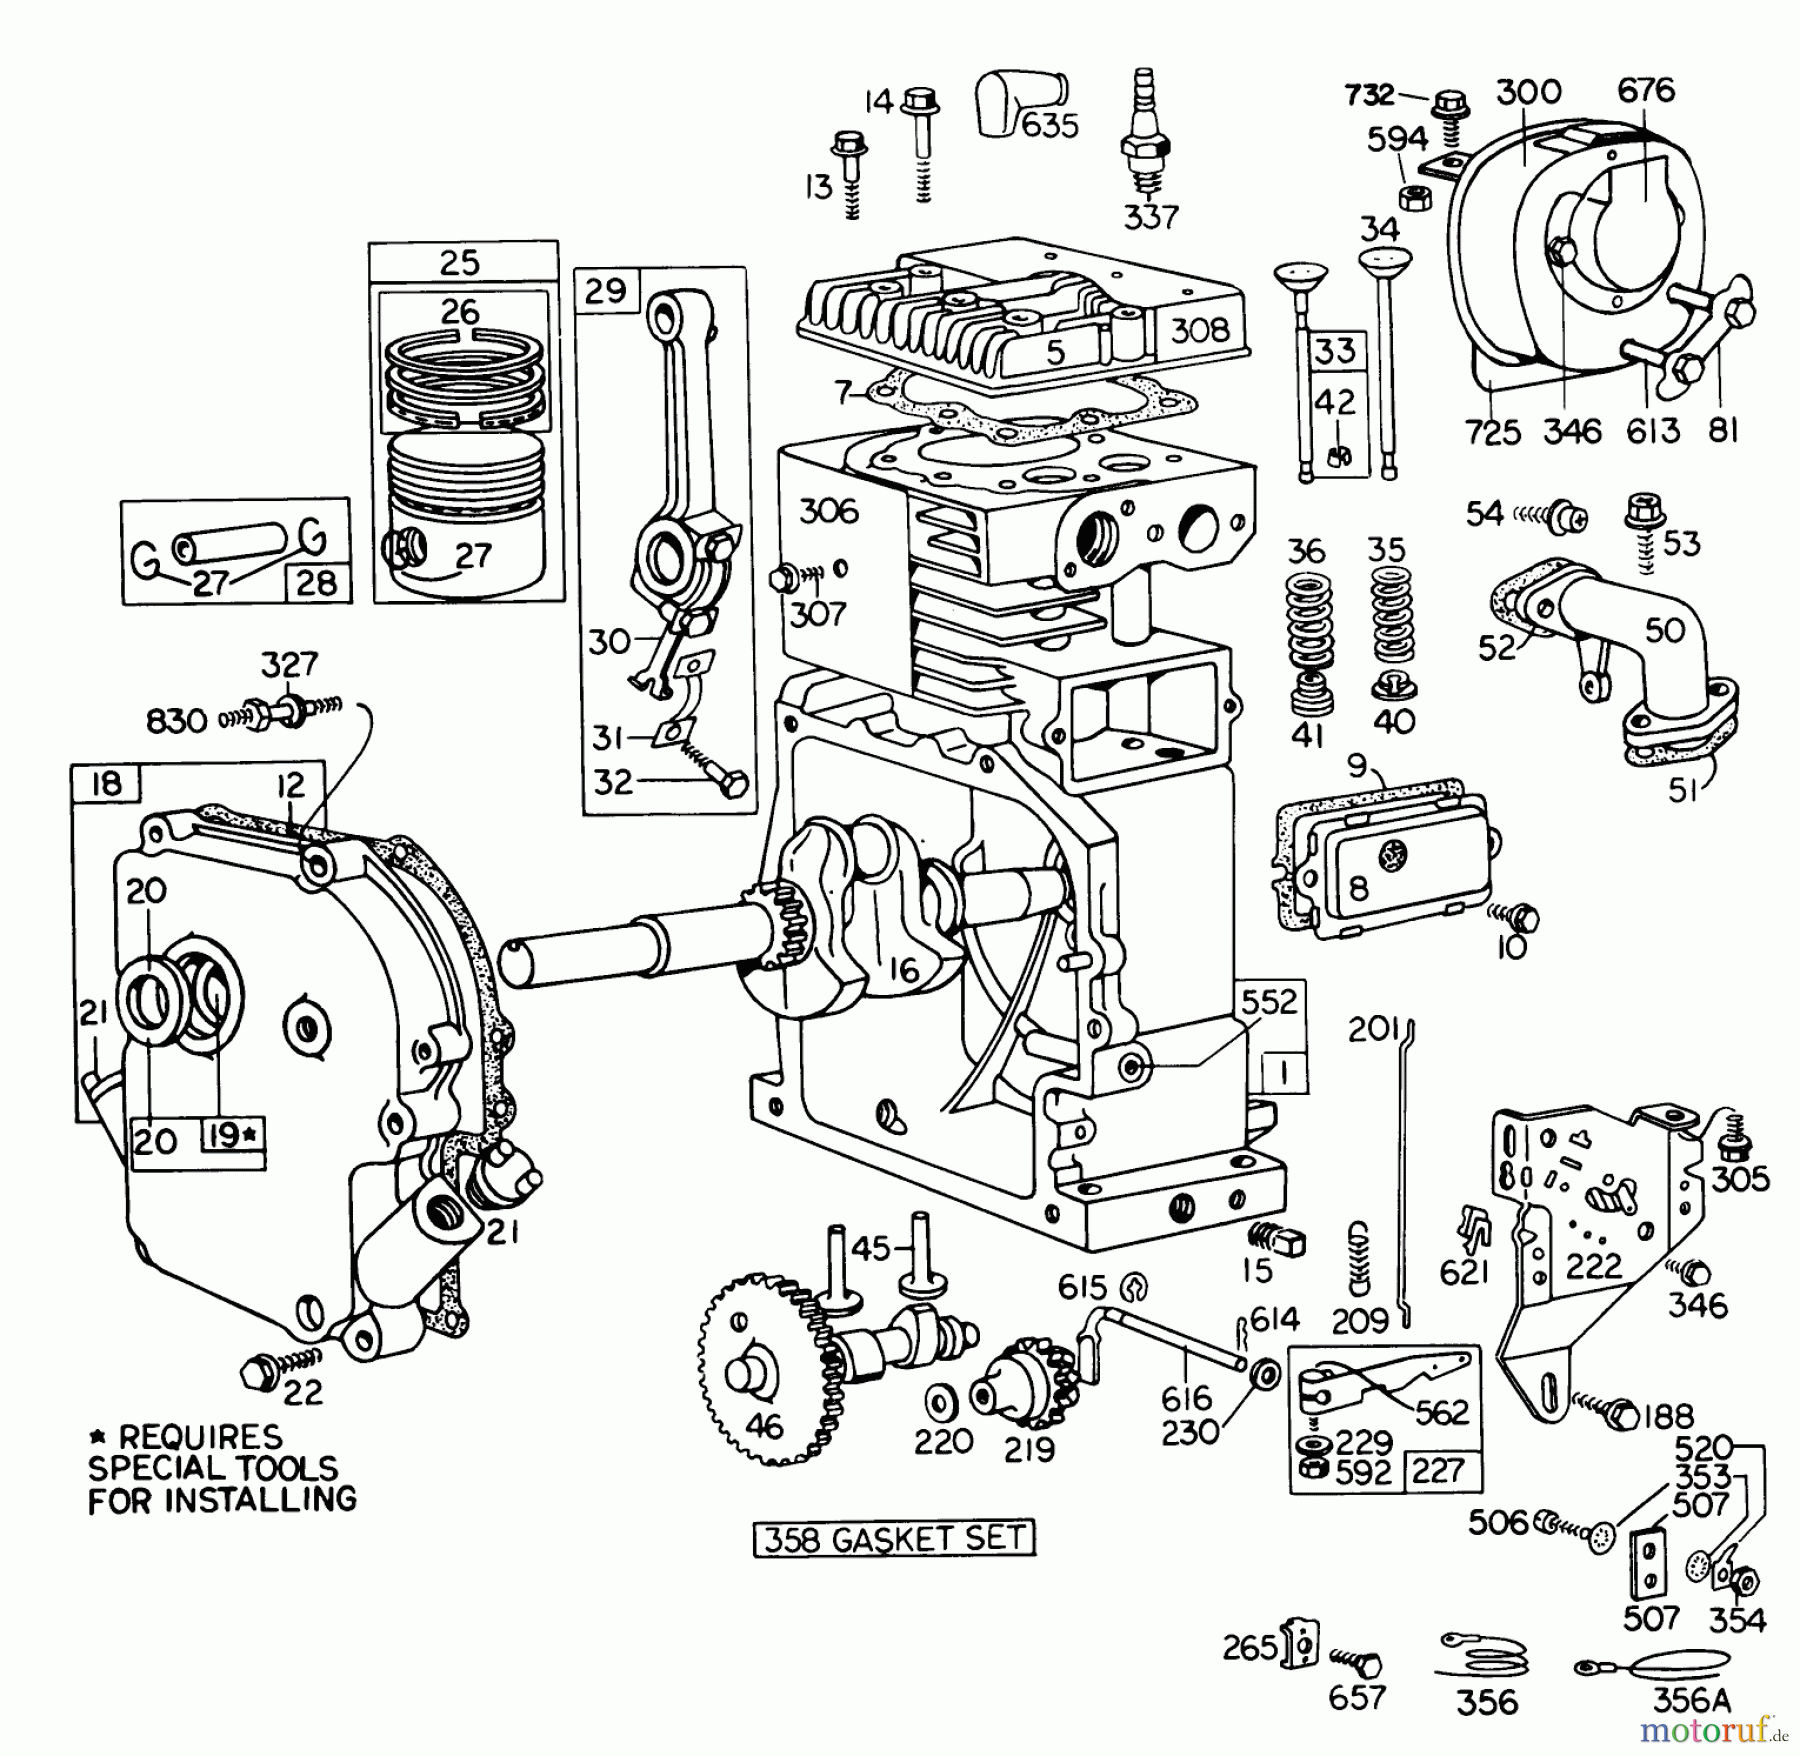  Toro Neu Snow Blowers/Snow Throwers Seite 1 31823 (832) - Toro 832 Snowthrower, 1976 (6000001-6999999) ENGINE MODEL NO. 190402 TYPE 0755-01 BRIGGS & STRATTON